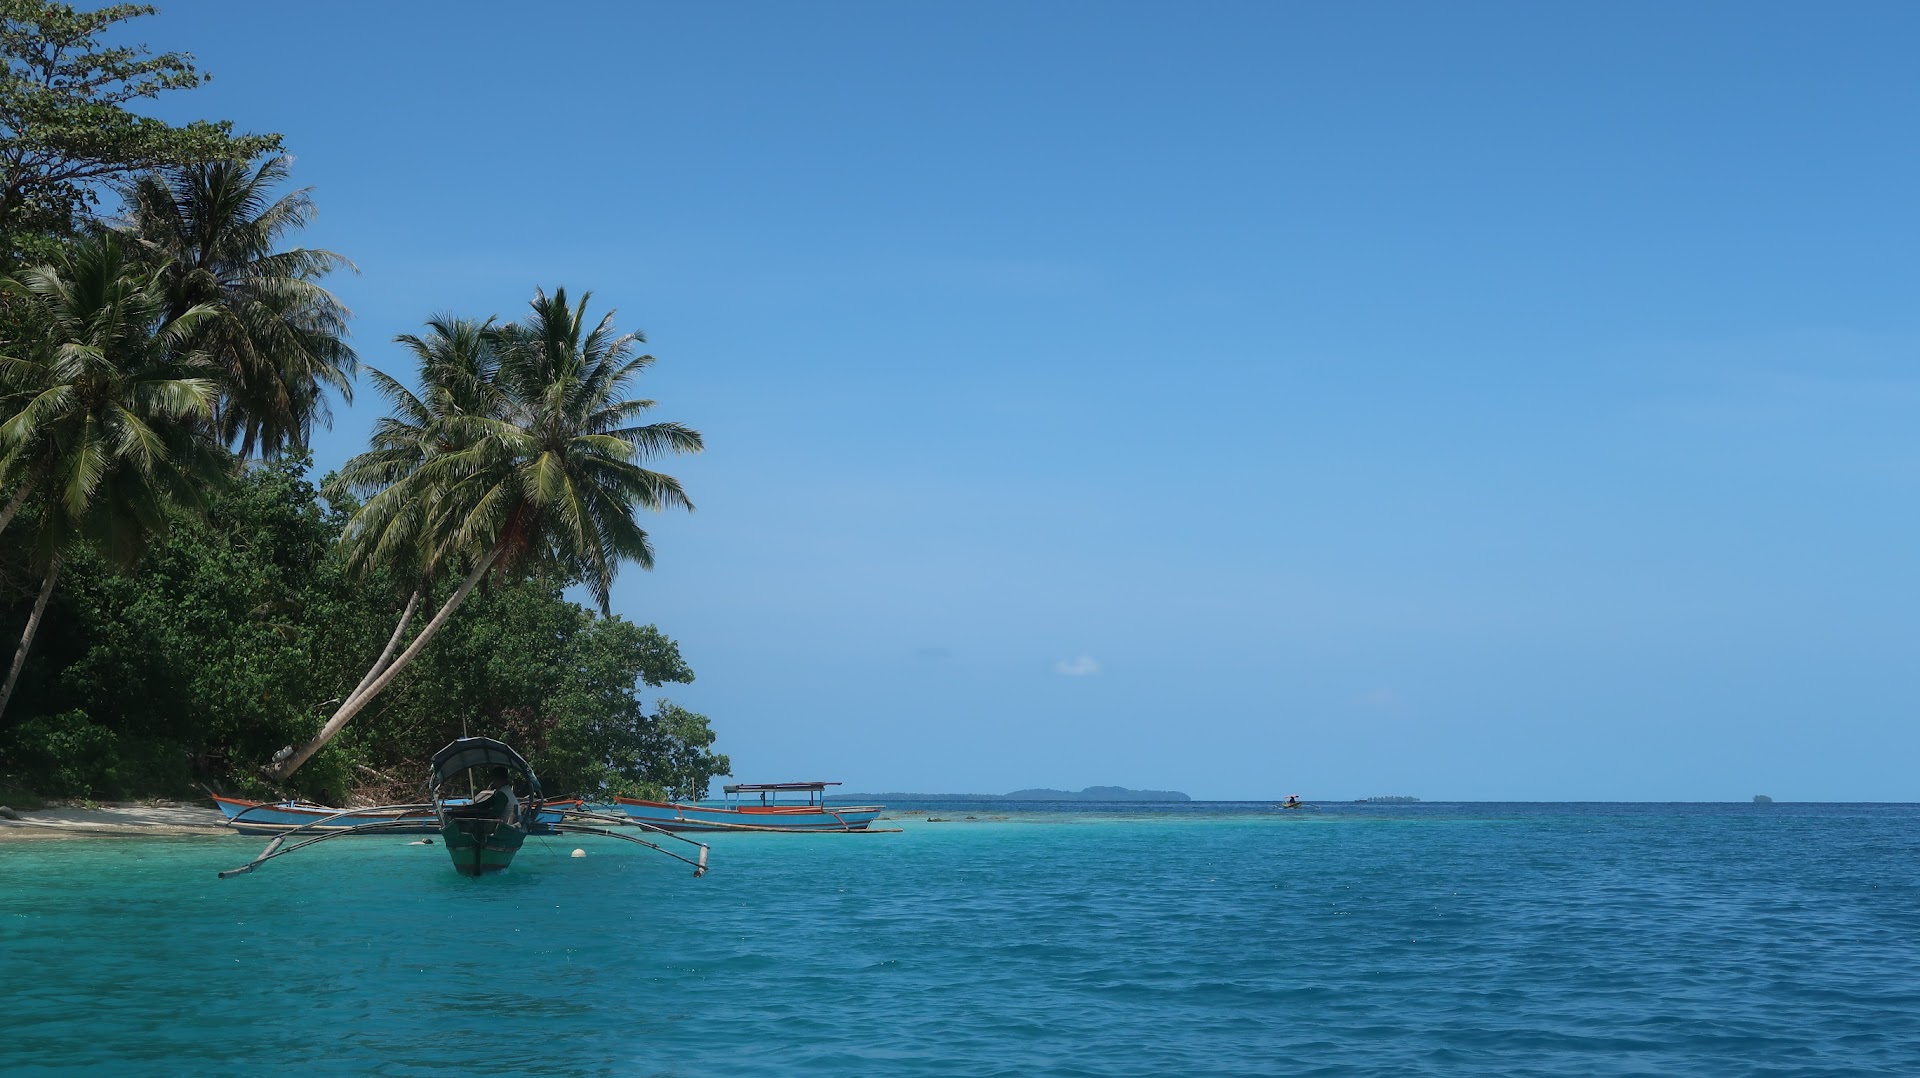 Pulau pinang: Harga Tiket, Foto, Lokasi, Fasilitas dan Spot